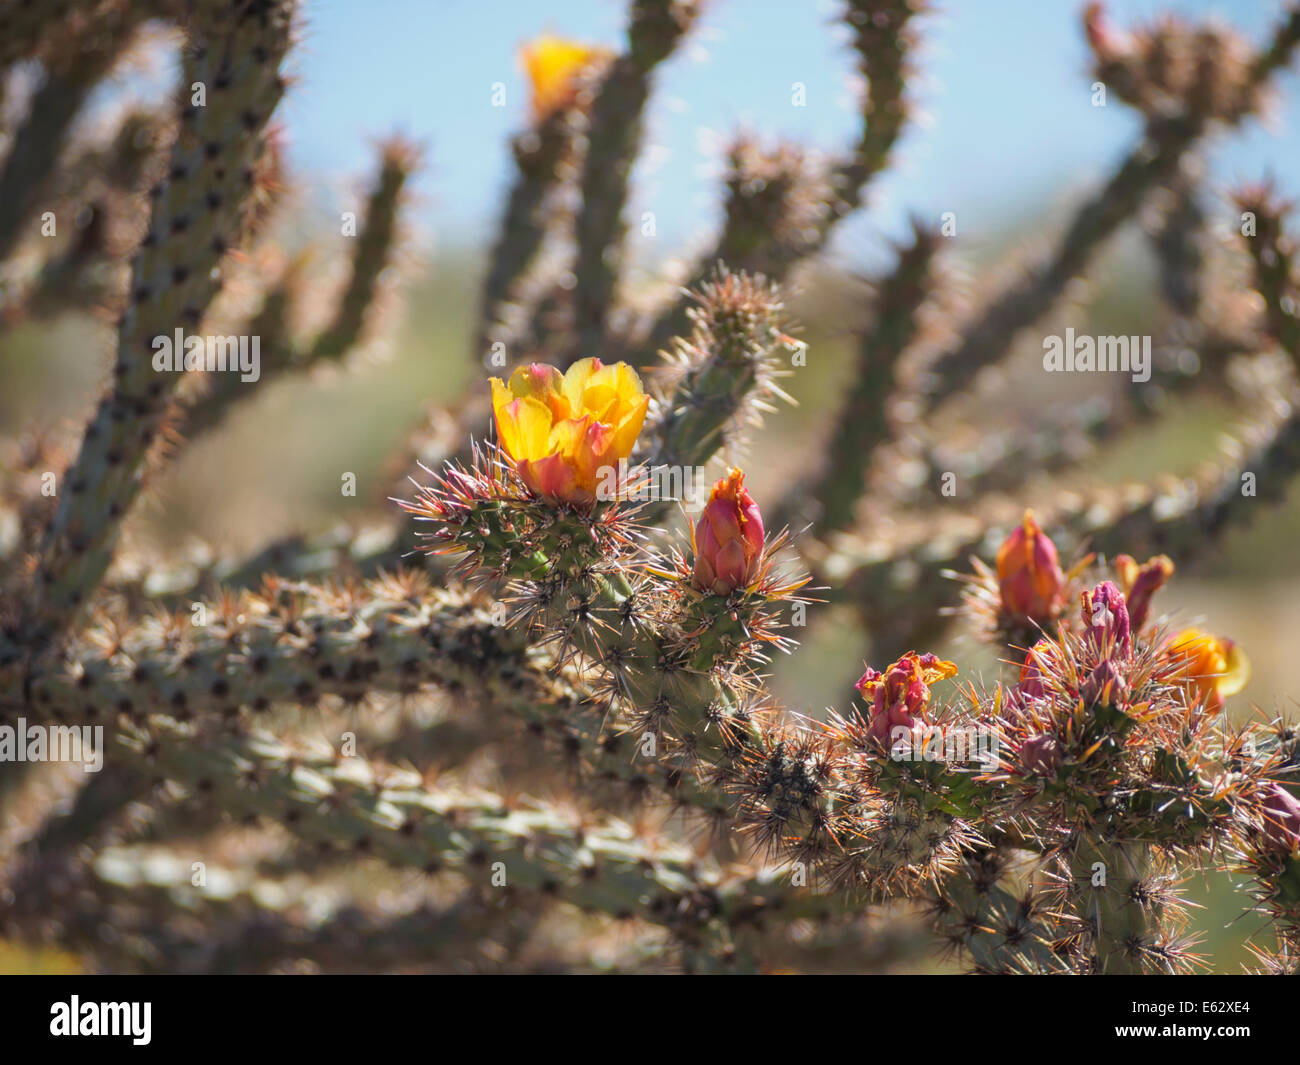 Fiori gialli germogli su Buckhorn Cholla cactus in Arizona deserto Sonoran AKA giallo a fiore di canna, Buck-horn, o Grandi cactus Foto Stock